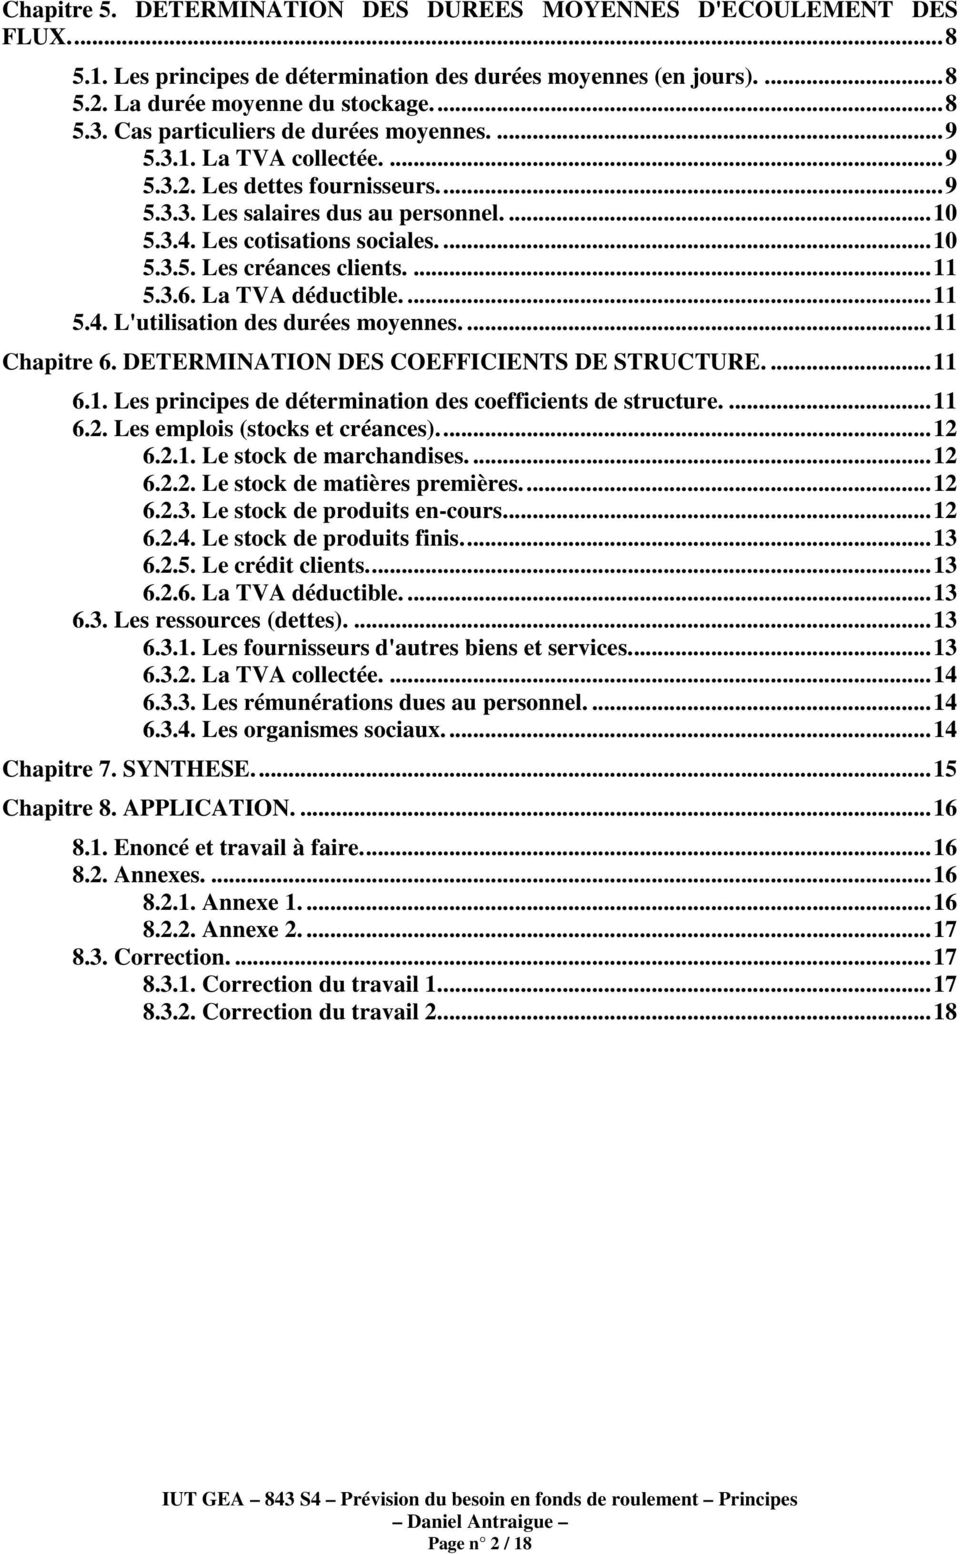 ... 11 5.3.6. La TVA déductible.... 11 5.4. L'utilisation des durées moyennes.... 11 Chapitre 6. DETERMINATION DES COEFFICIENTS DE STRUCTURE.... 11 6.1. Les principes de détermination des coefficients de structure.